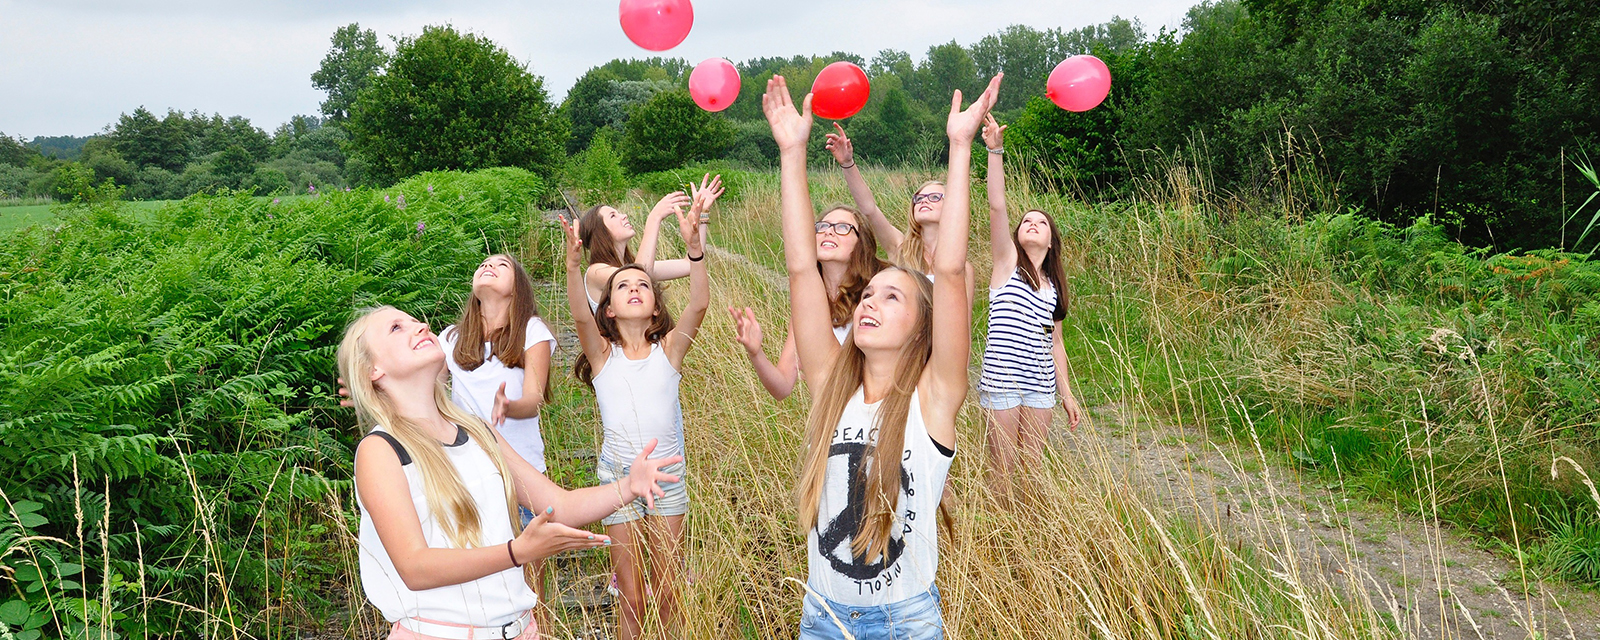 Acht Mädchen spielen mit roten Ballons im Feld 